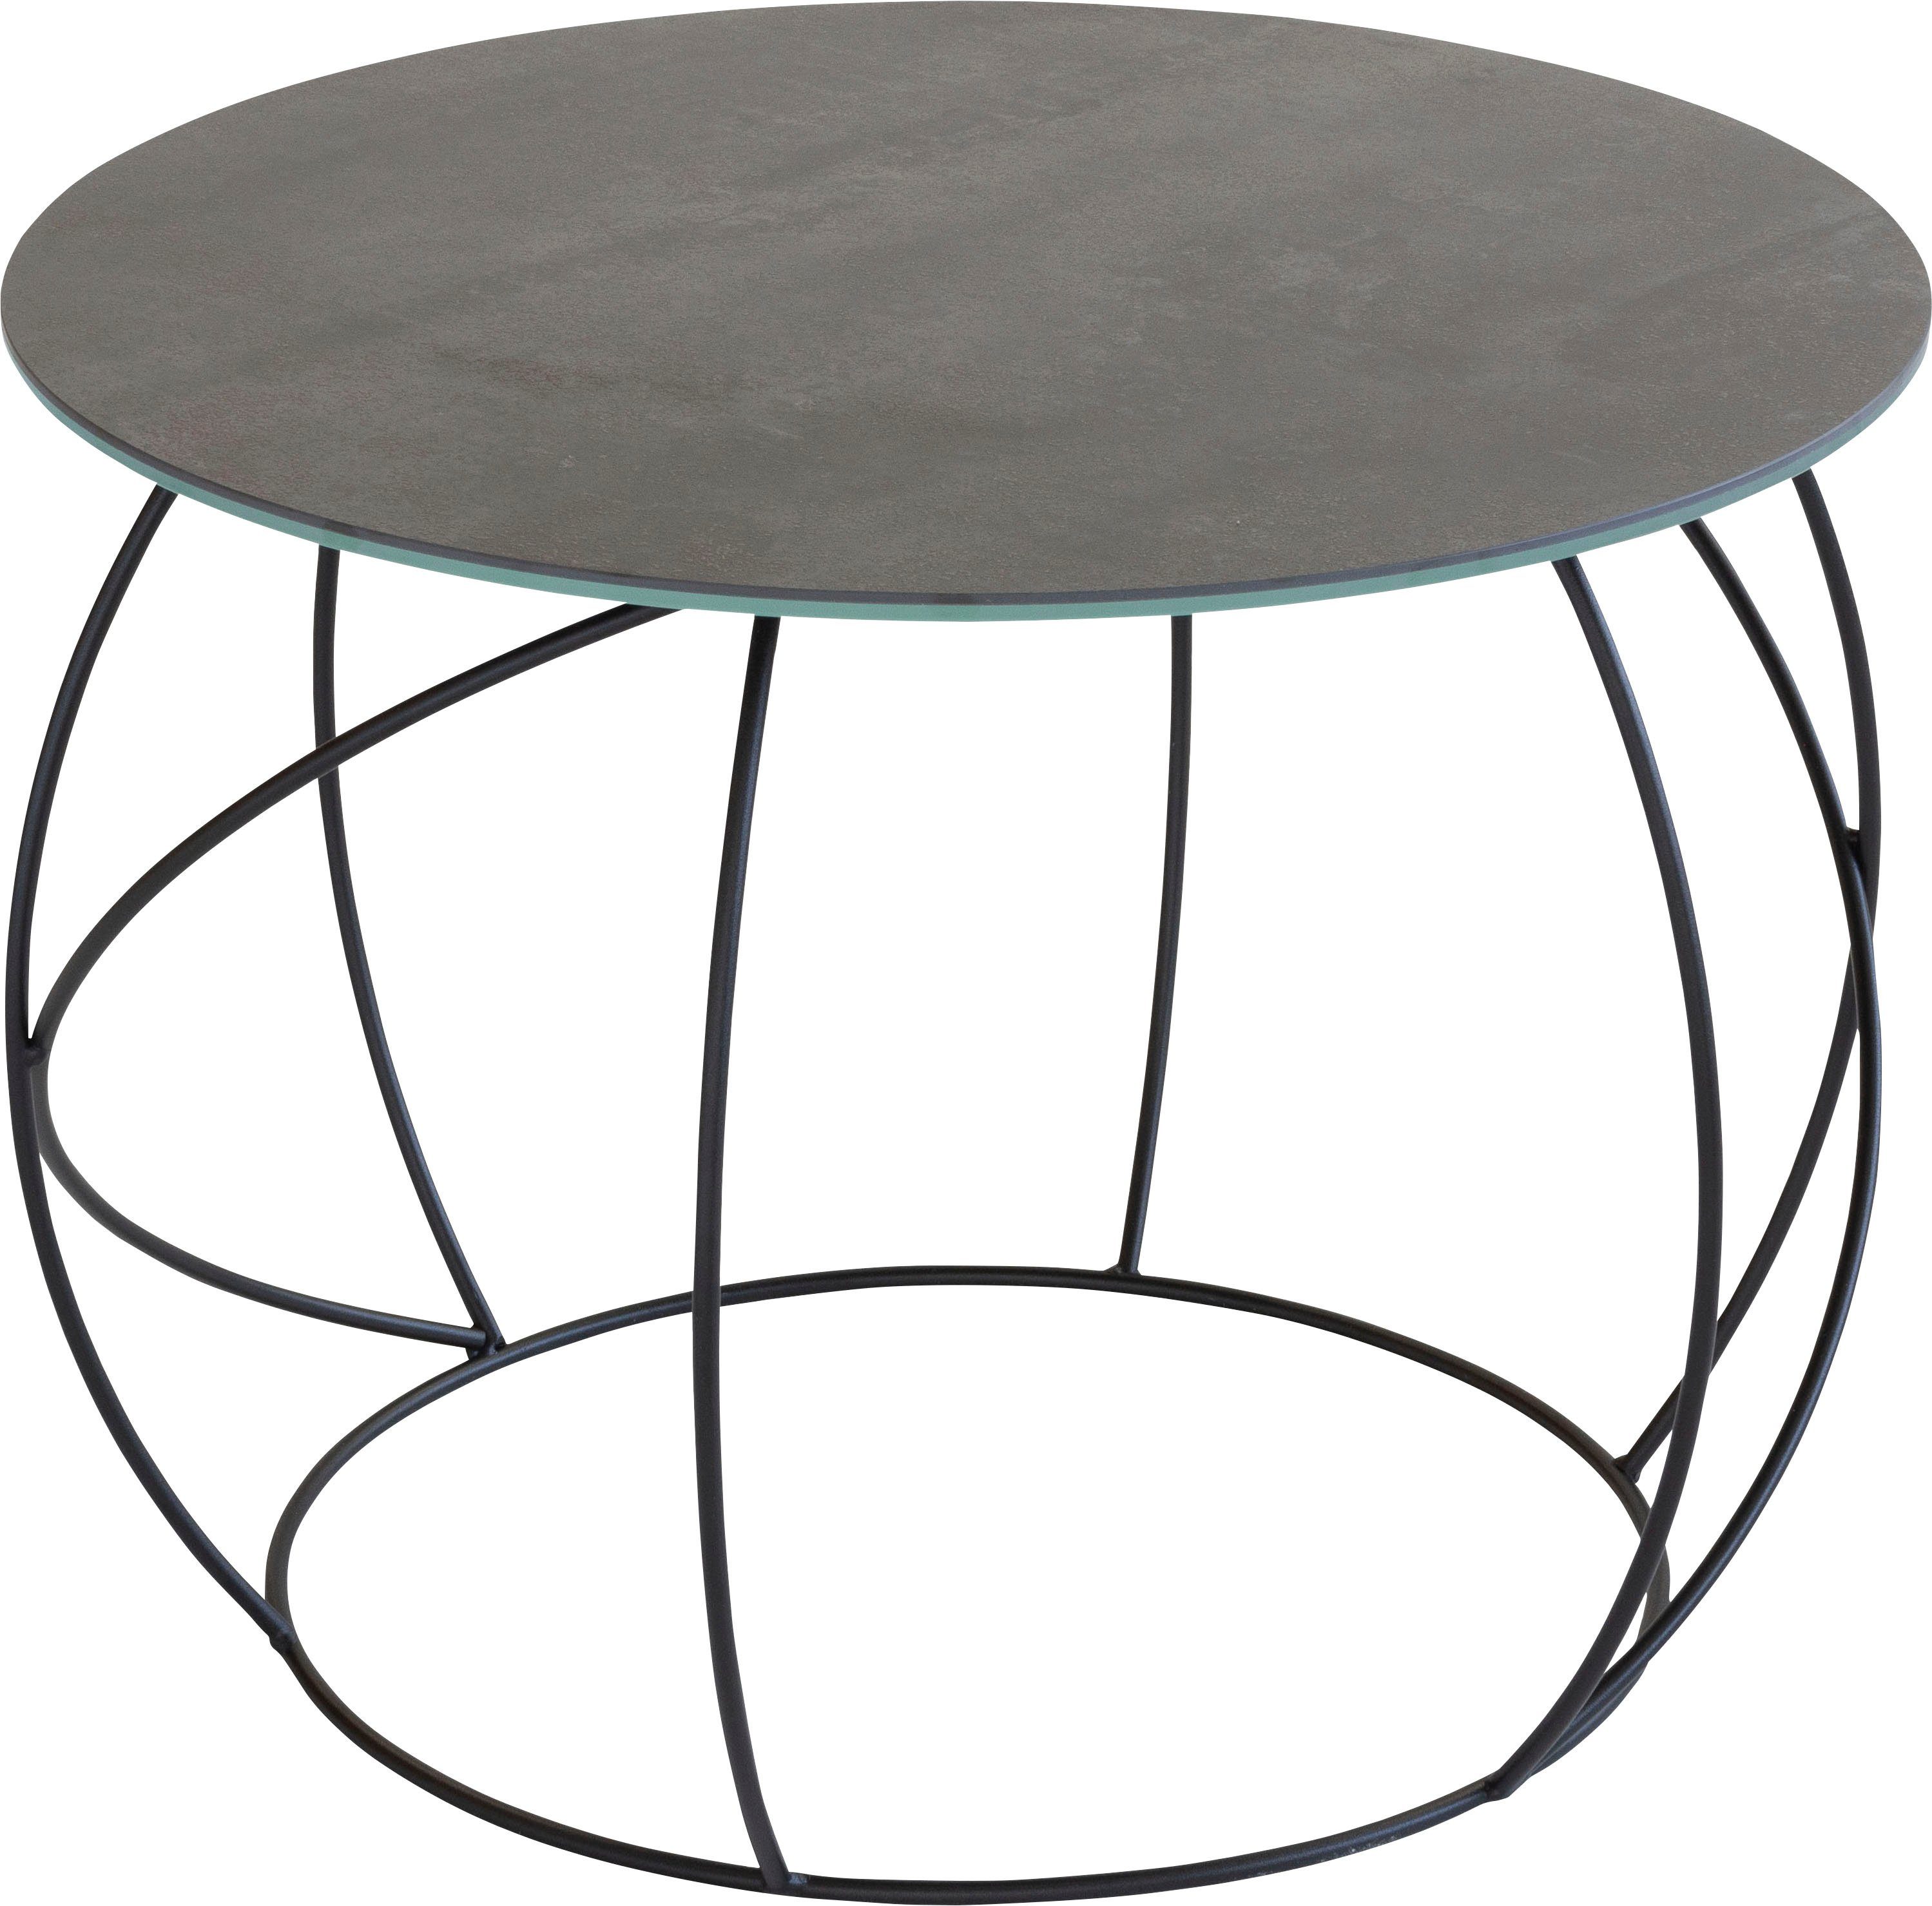 Möbel Tischplatte Beistelltisch, hochwertiger aus Henke Keramik